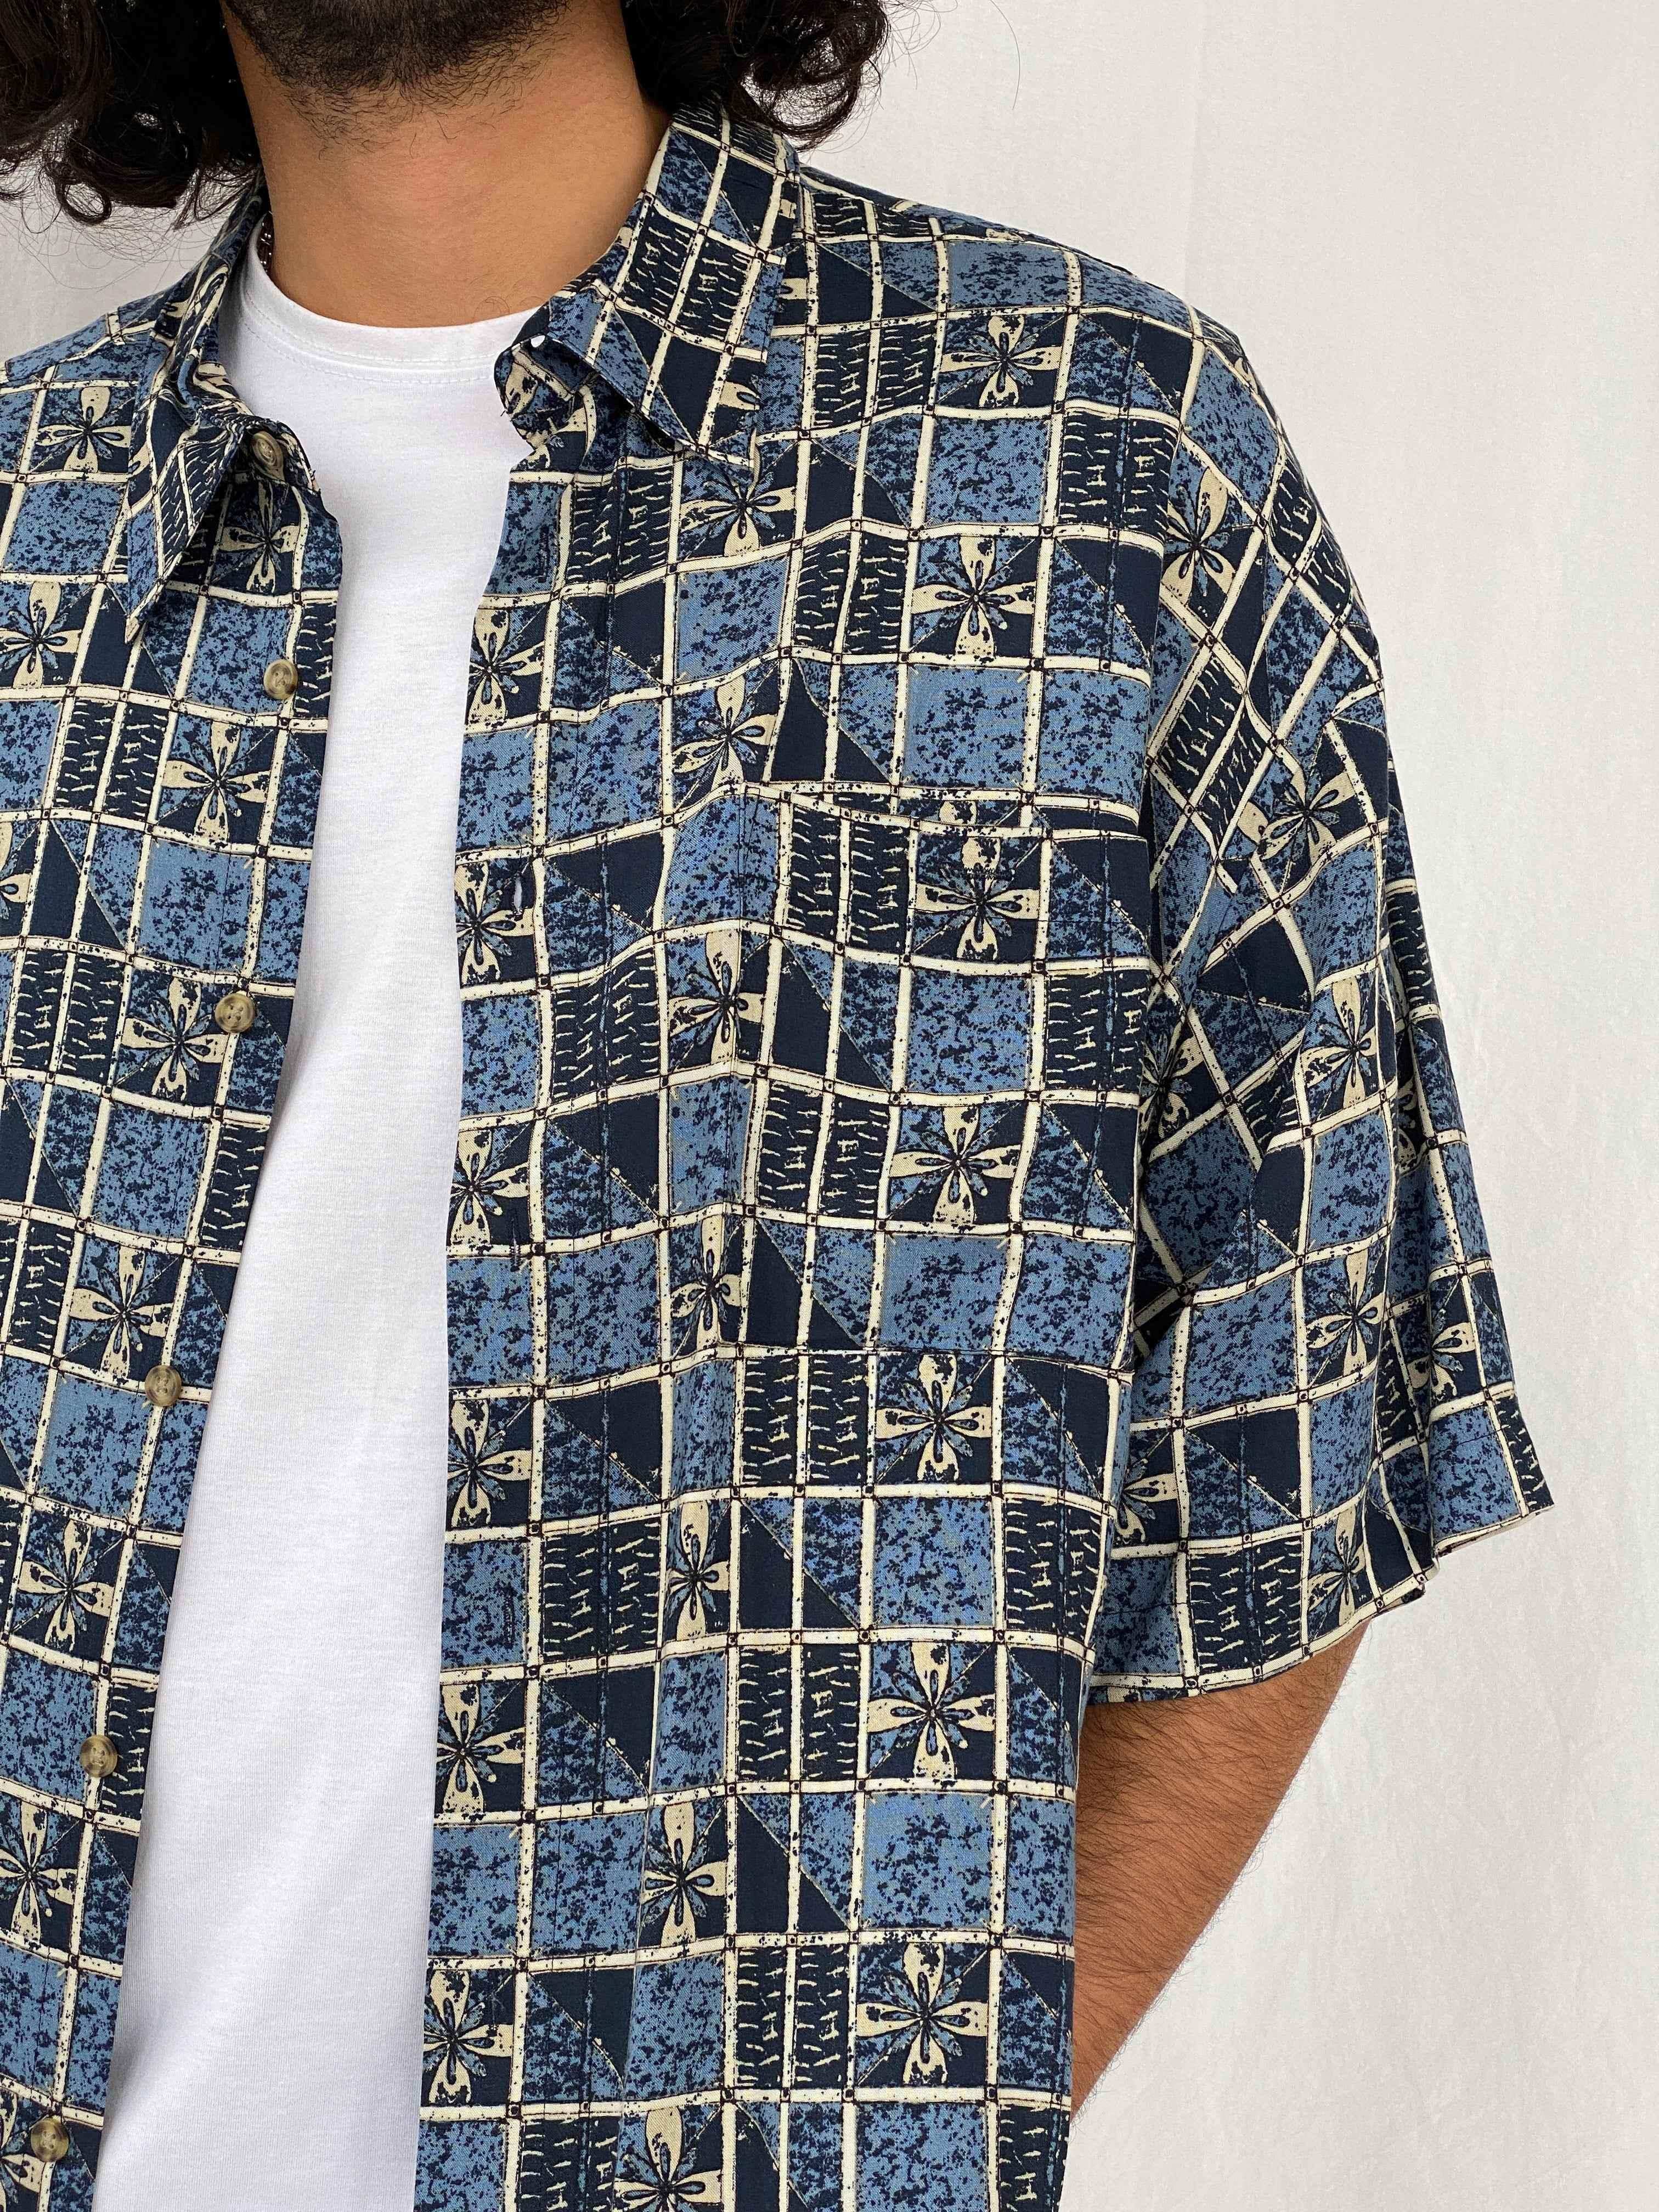 Vintage Puritan Printed Shirt - Balagan Vintage Half Sleeve Shirt 90s, half sleeve shirt, men, printed shirt